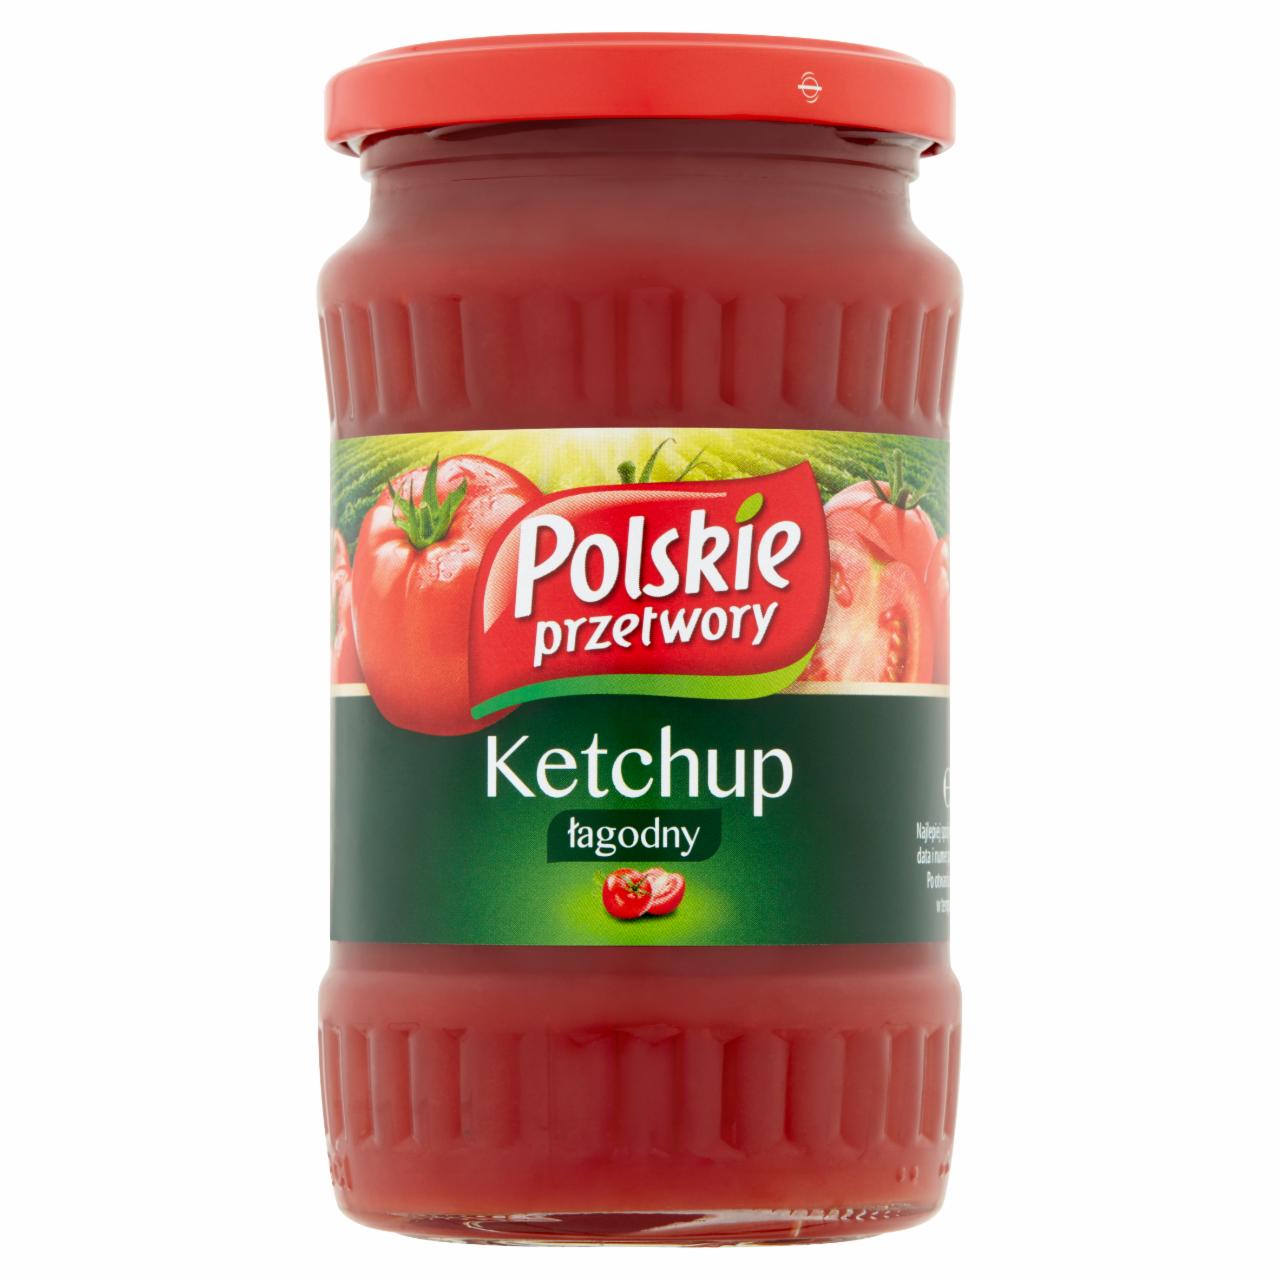 Zdjęcia - Polskie przetwory Ketchup łagodny 380 g